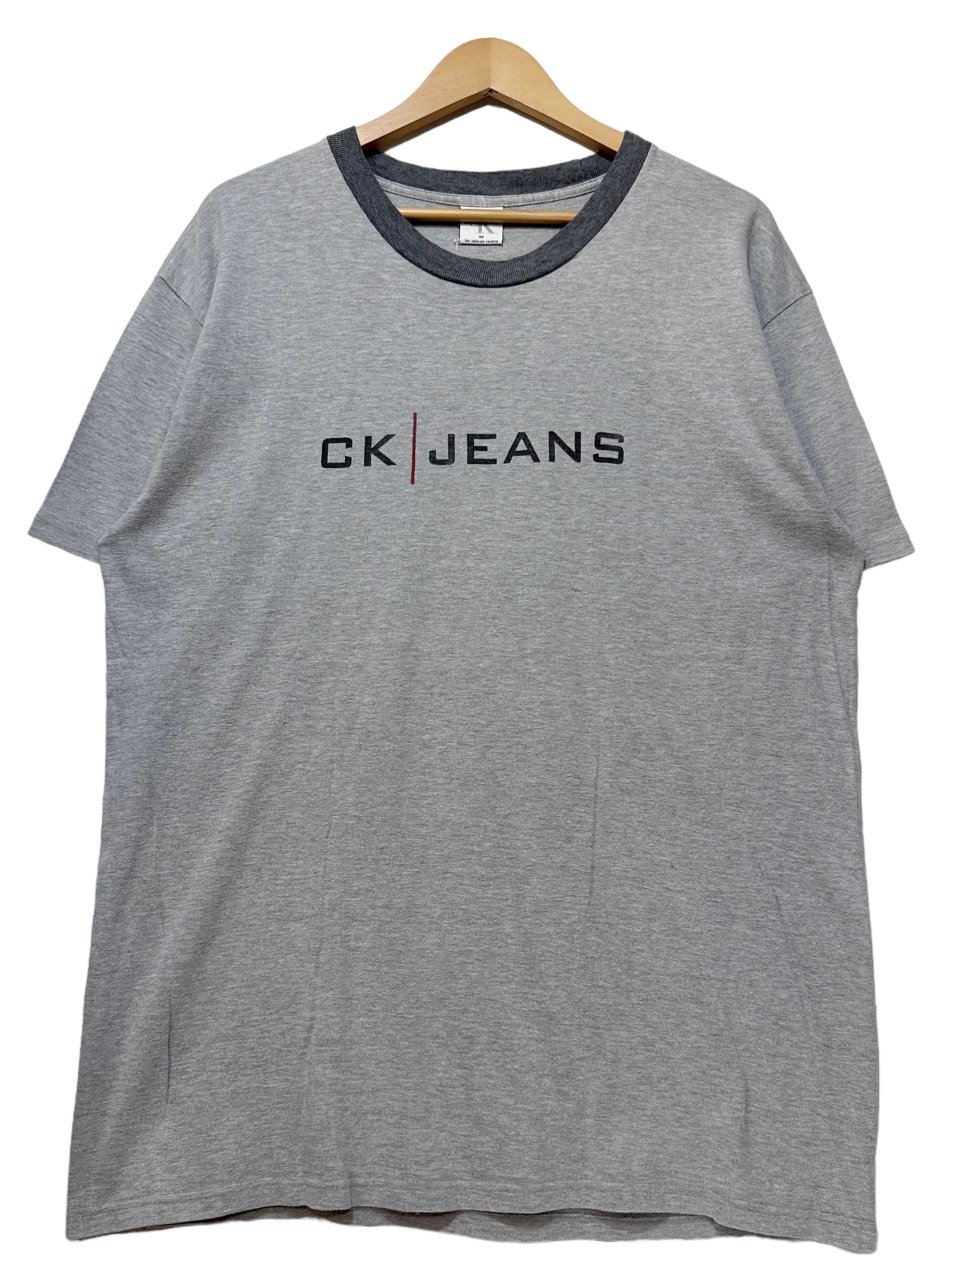 【新品】カルバンクラインCalvin Klein Tシャツ　黒　M ロゴ　CK